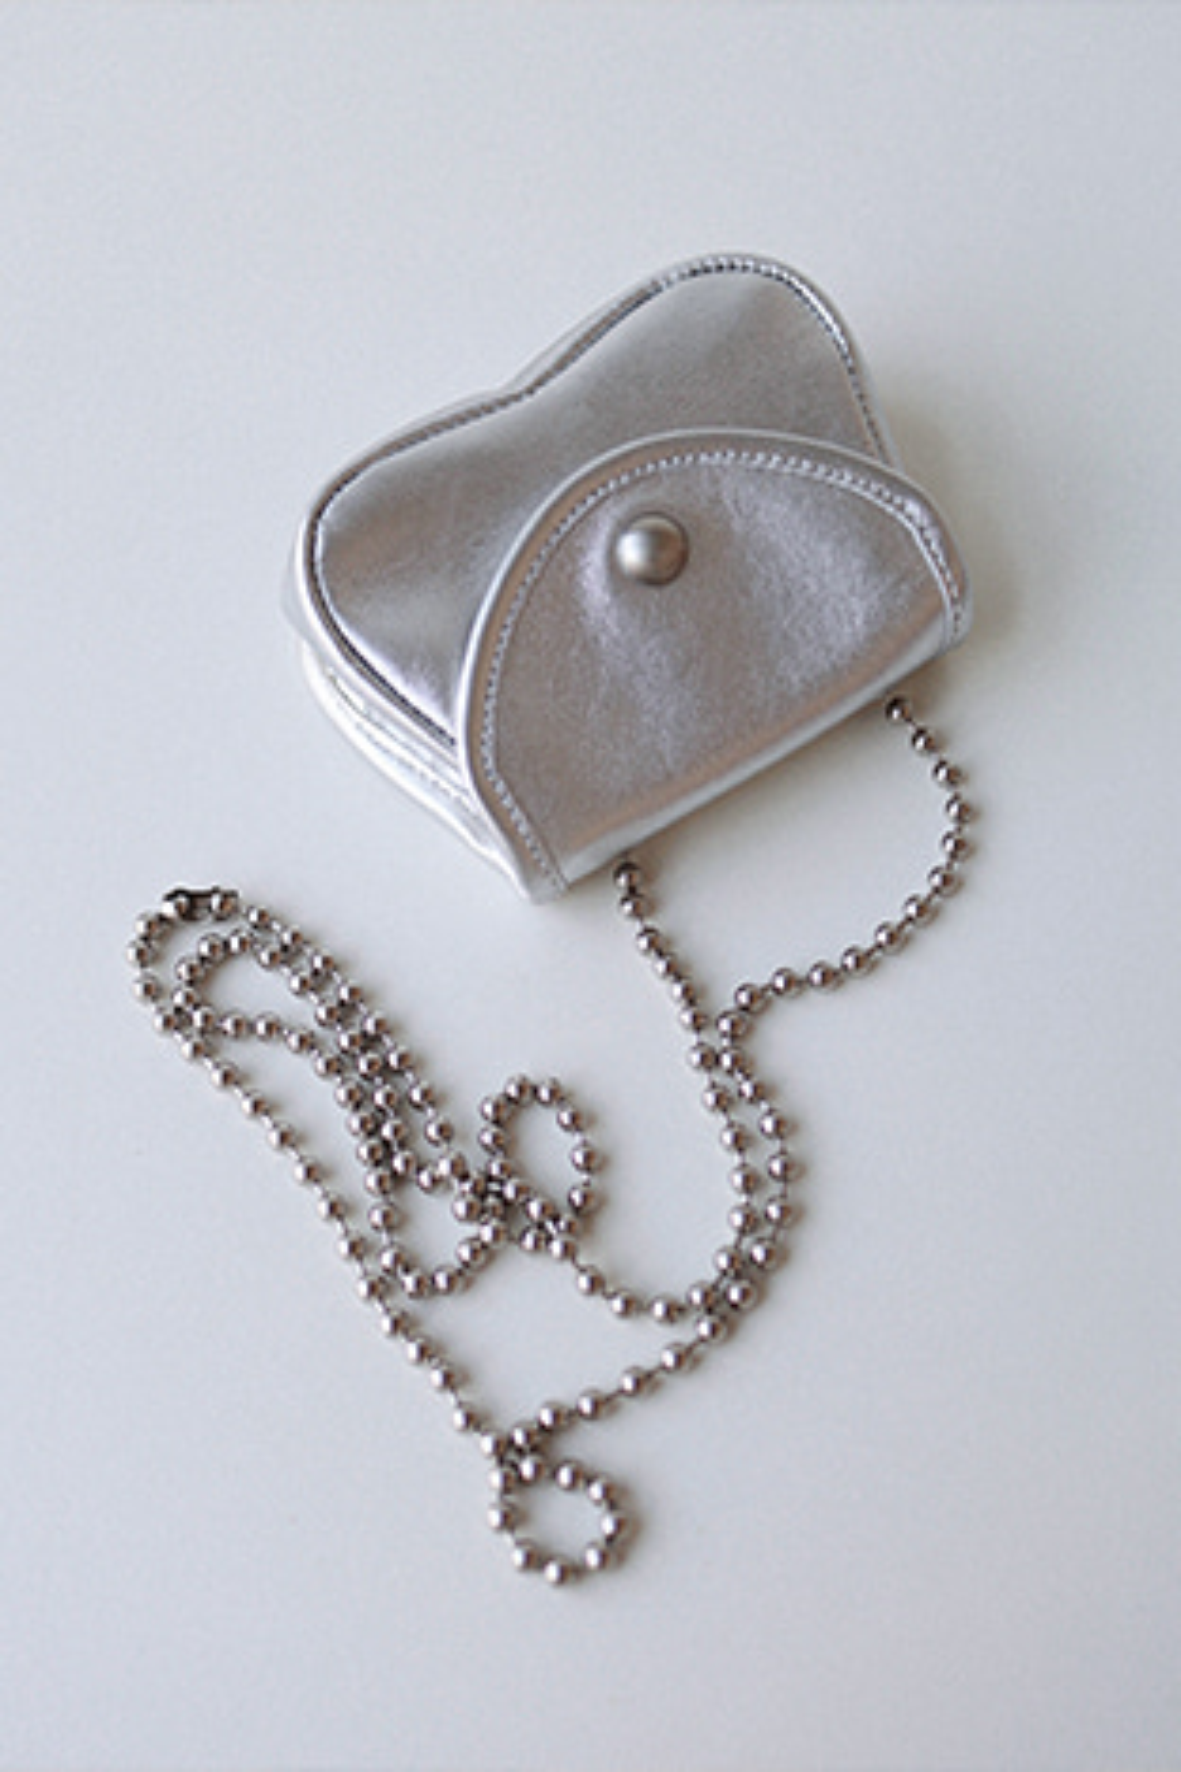 [mimunae] Teenie Ballchain bag, silver